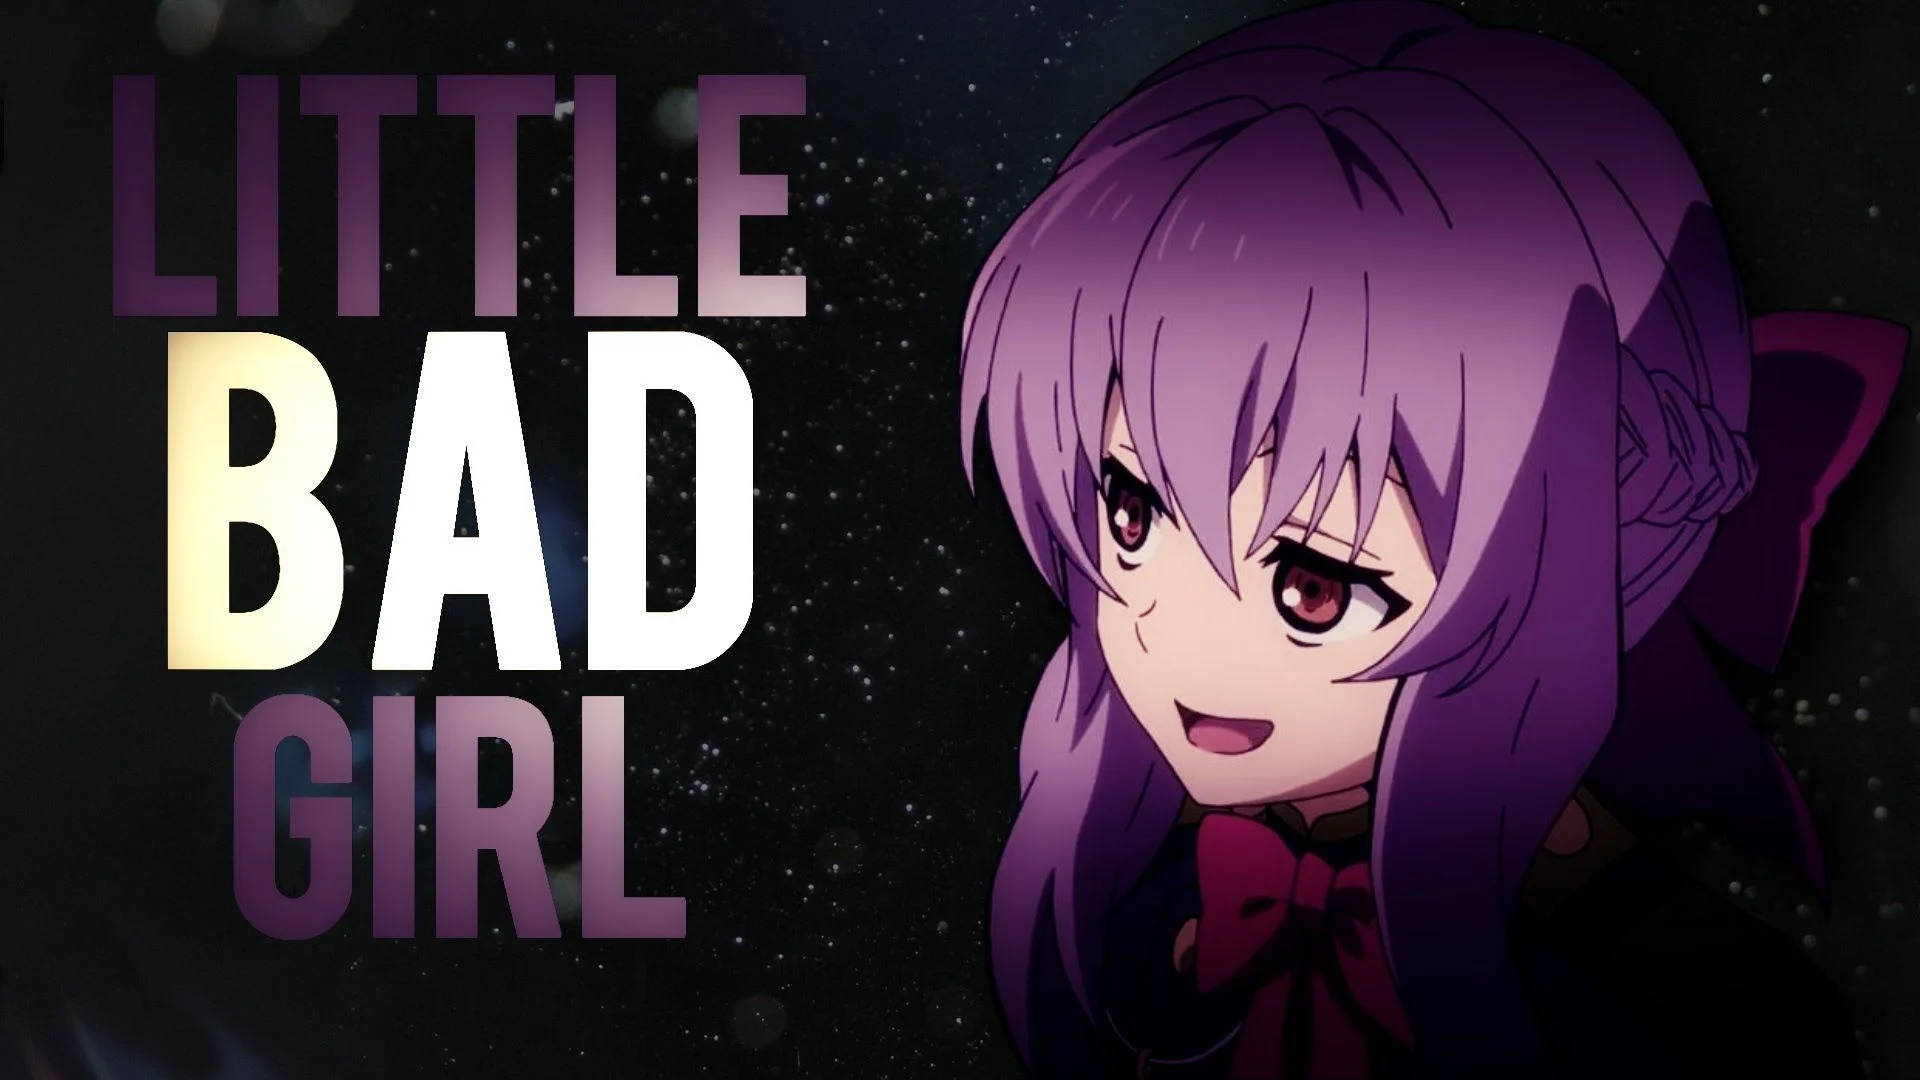 Little Bad Girl Anime Cover Wallpaper